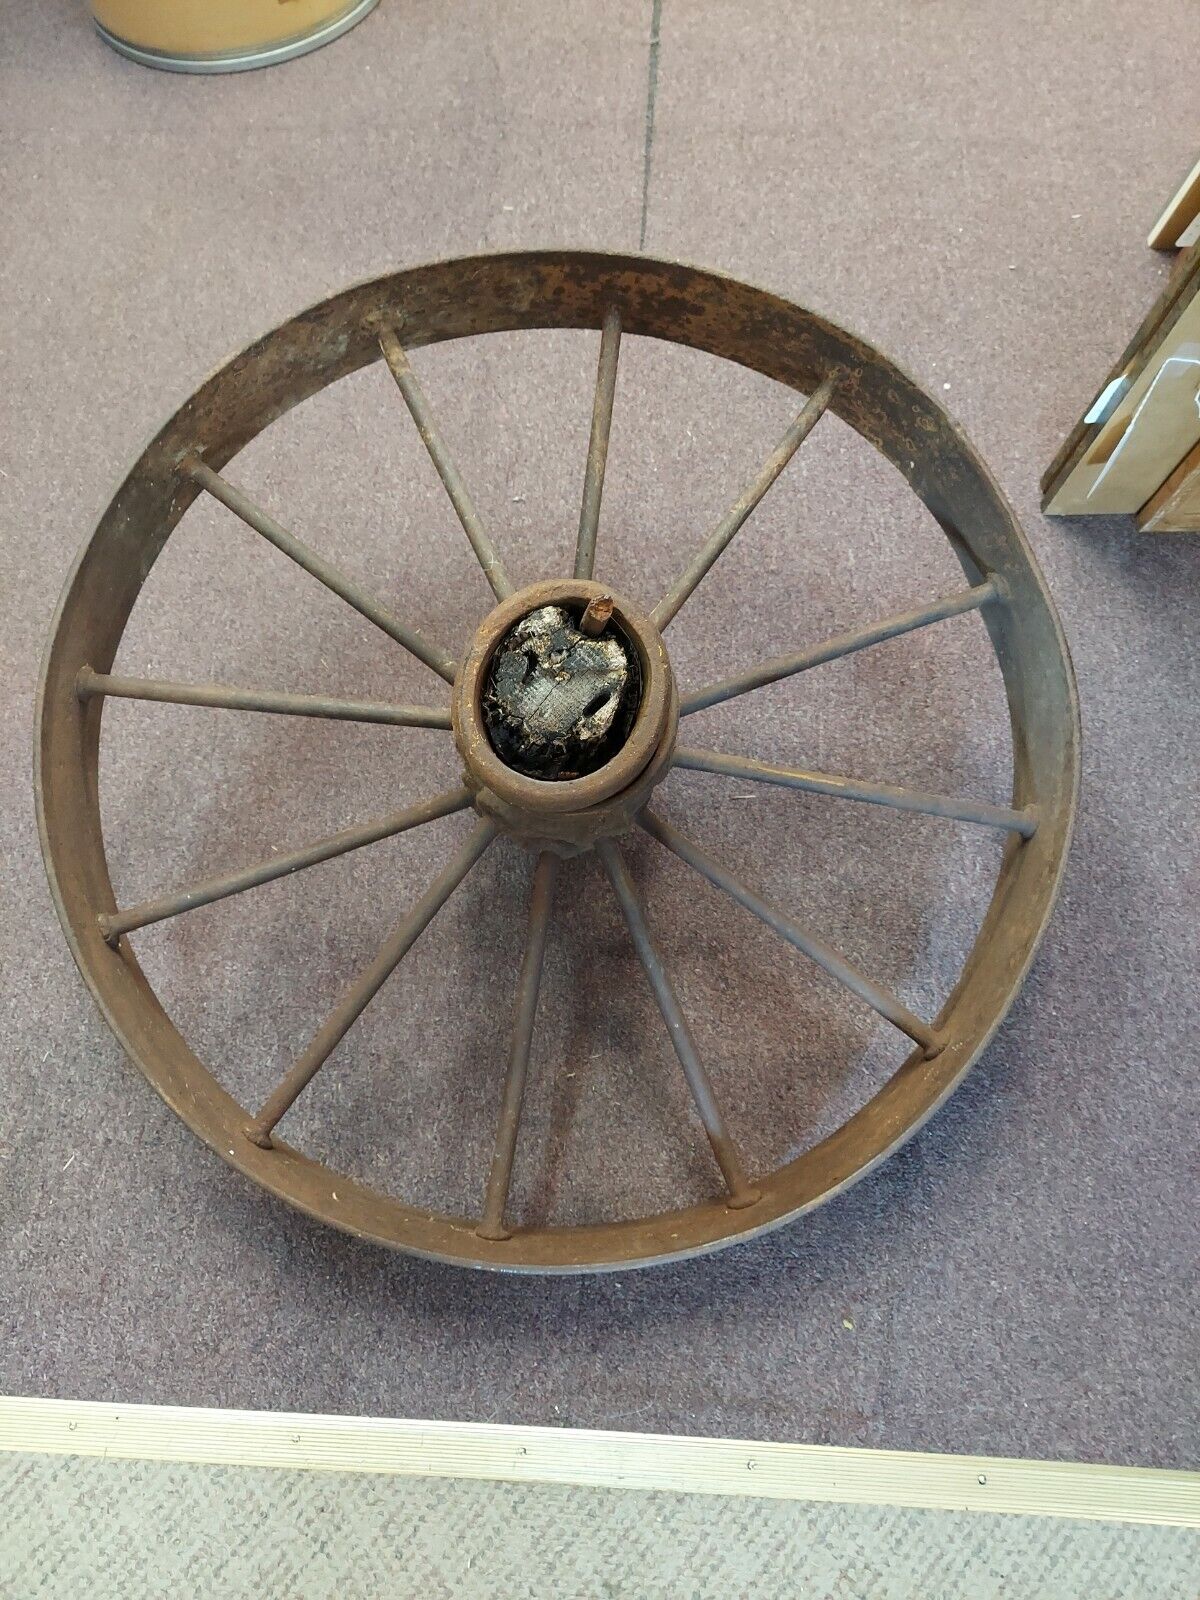 Vintage Iron Wheel